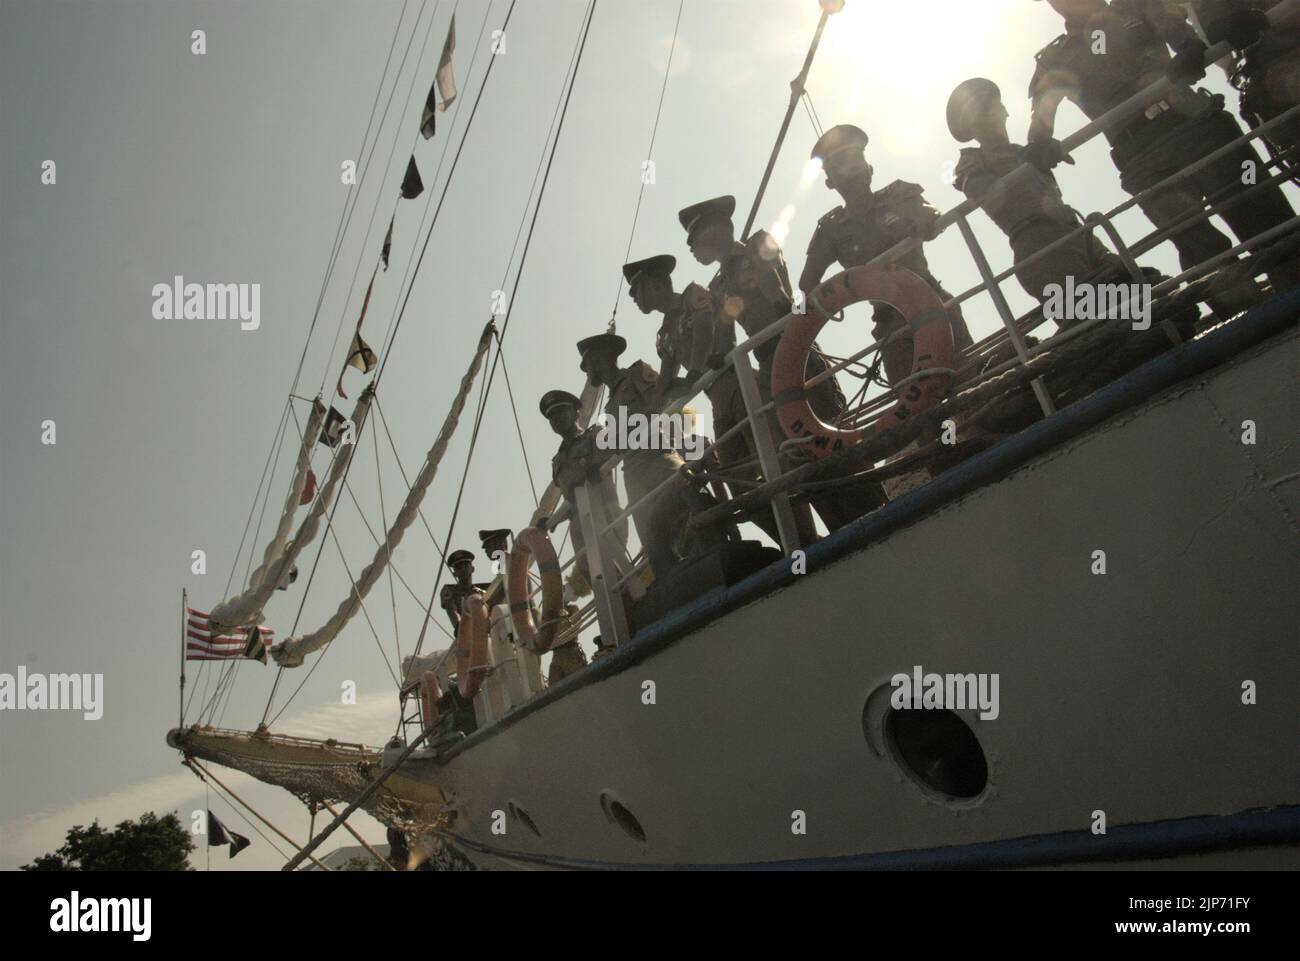 Les officiers de la marine indonésienne sont photographiés sous un soleil éclatant alors qu'ils se trouvent sur le pont de KRI Dewaruci (Dewa Ruci), un grand navire indonésien, après l'ouverture de la goélette de type barquentine pour les visiteurs publics au port de Kolinlamil (port de la marine) à Tanjung Priok, dans le nord de Jakarta, Jakarta, en Indonésie. Banque D'Images